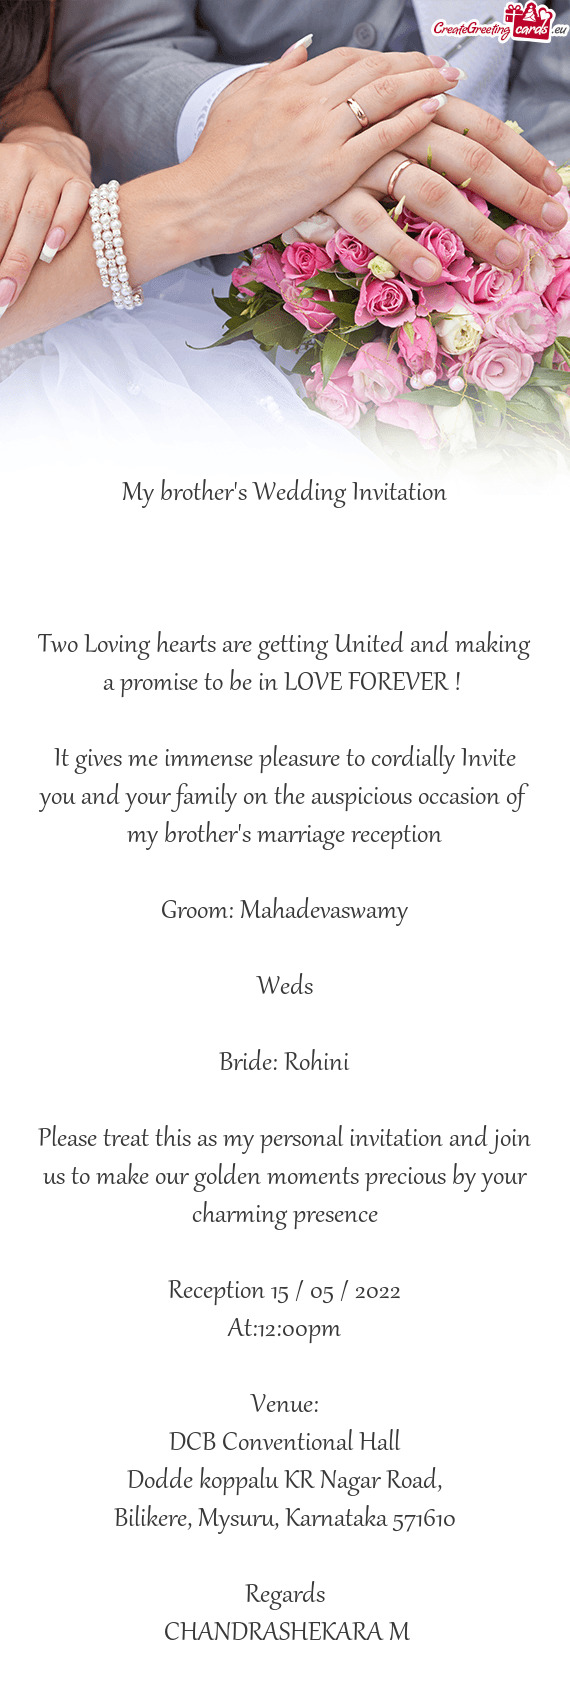 Bride: Rohini